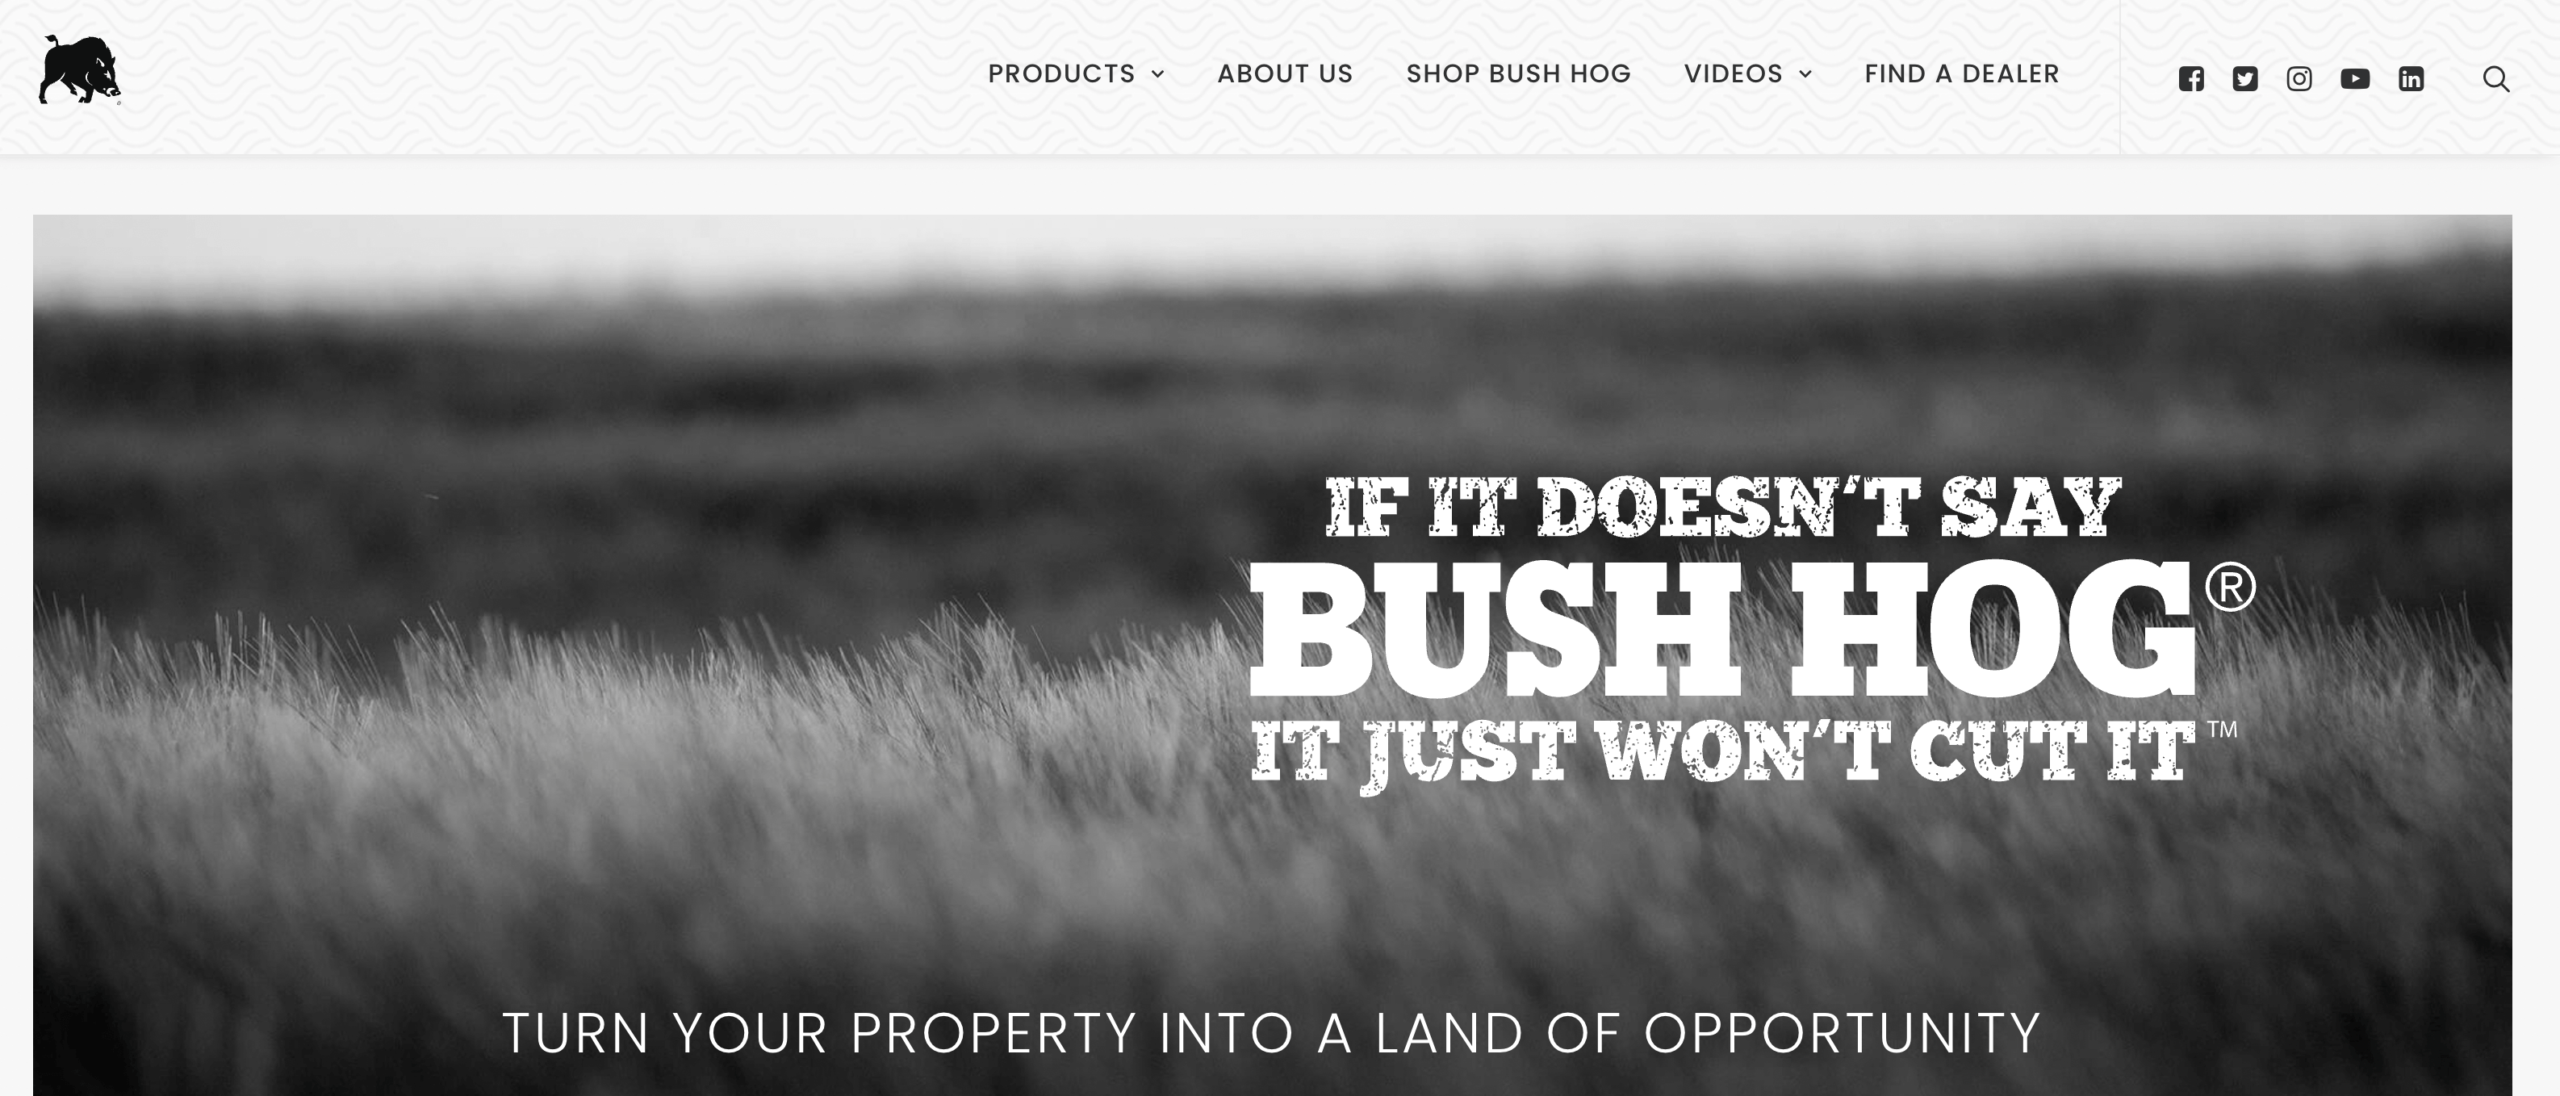 Bush Hog website